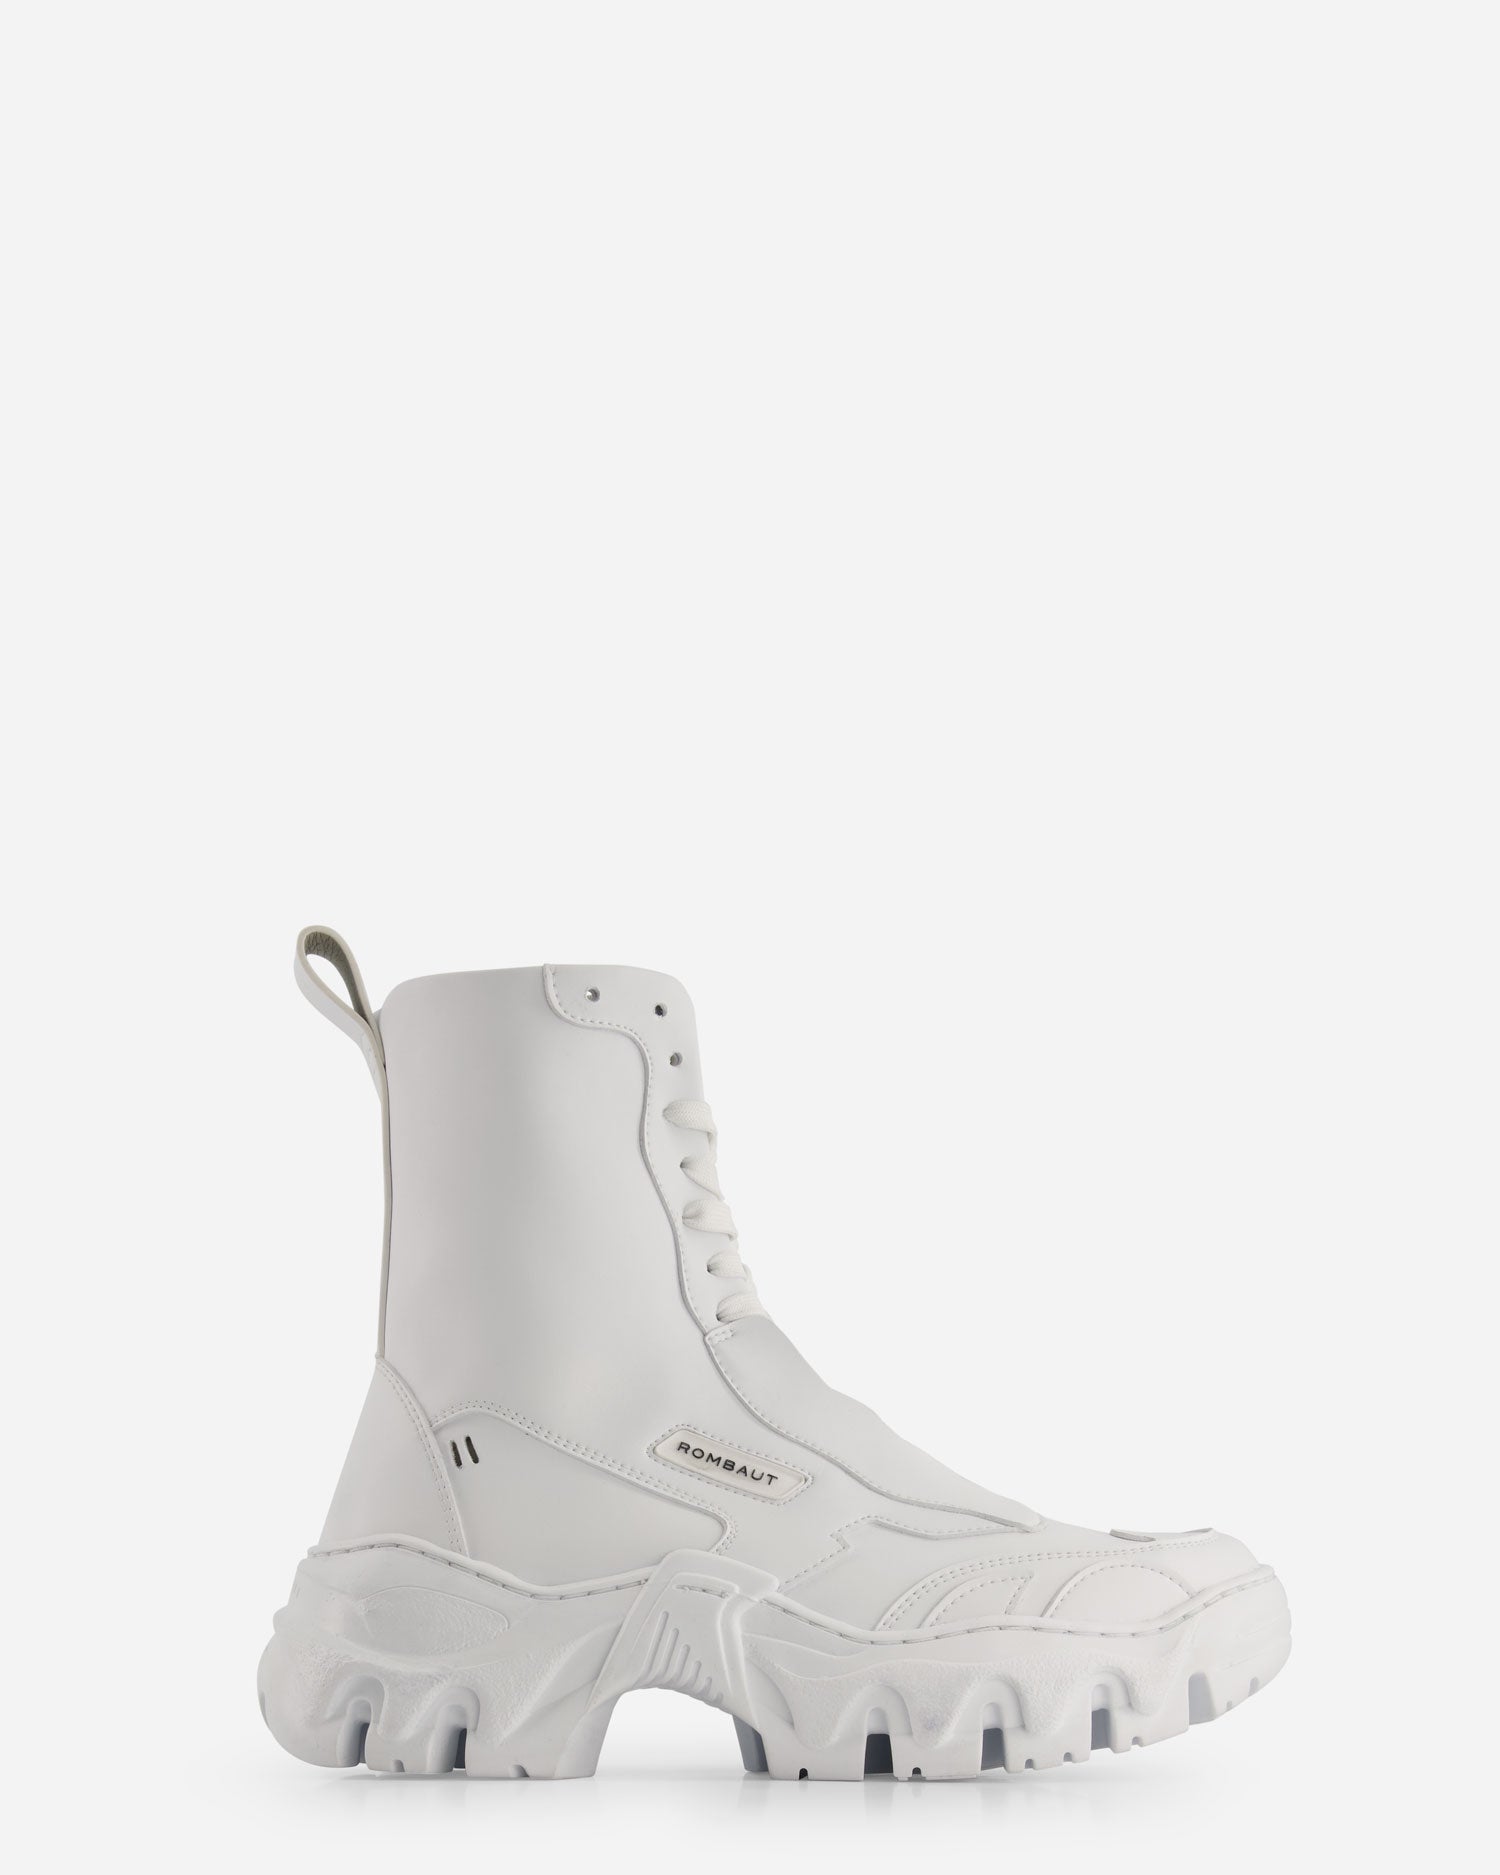 White Future Leather Boccaccio II Boots - Boots - Rombaut - Elevastor